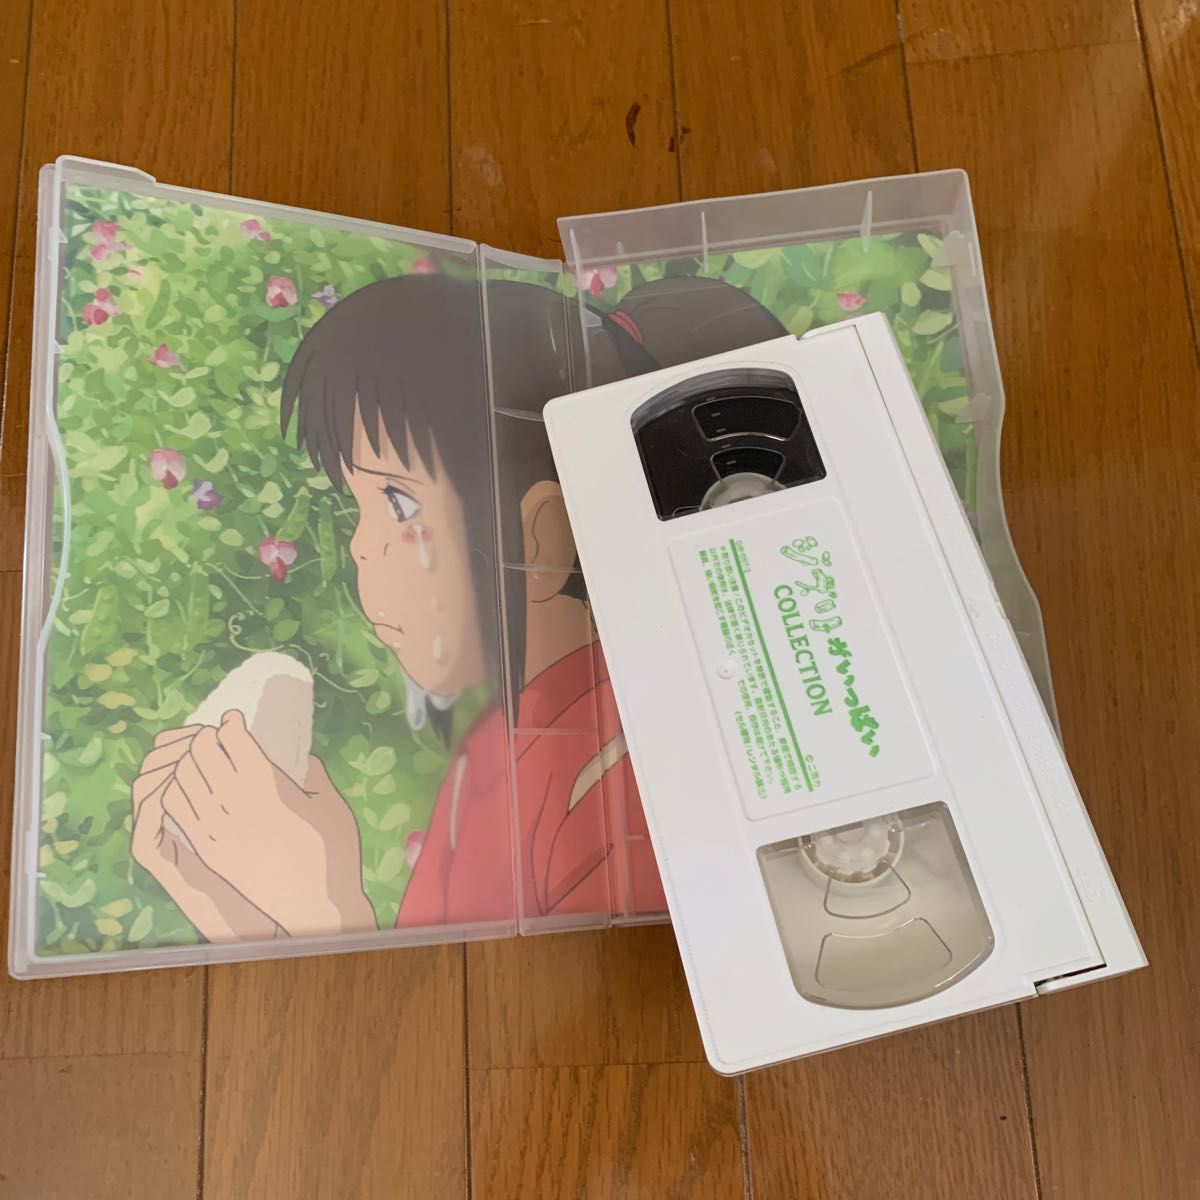 千と千尋の神隠し・DVD ・VHS